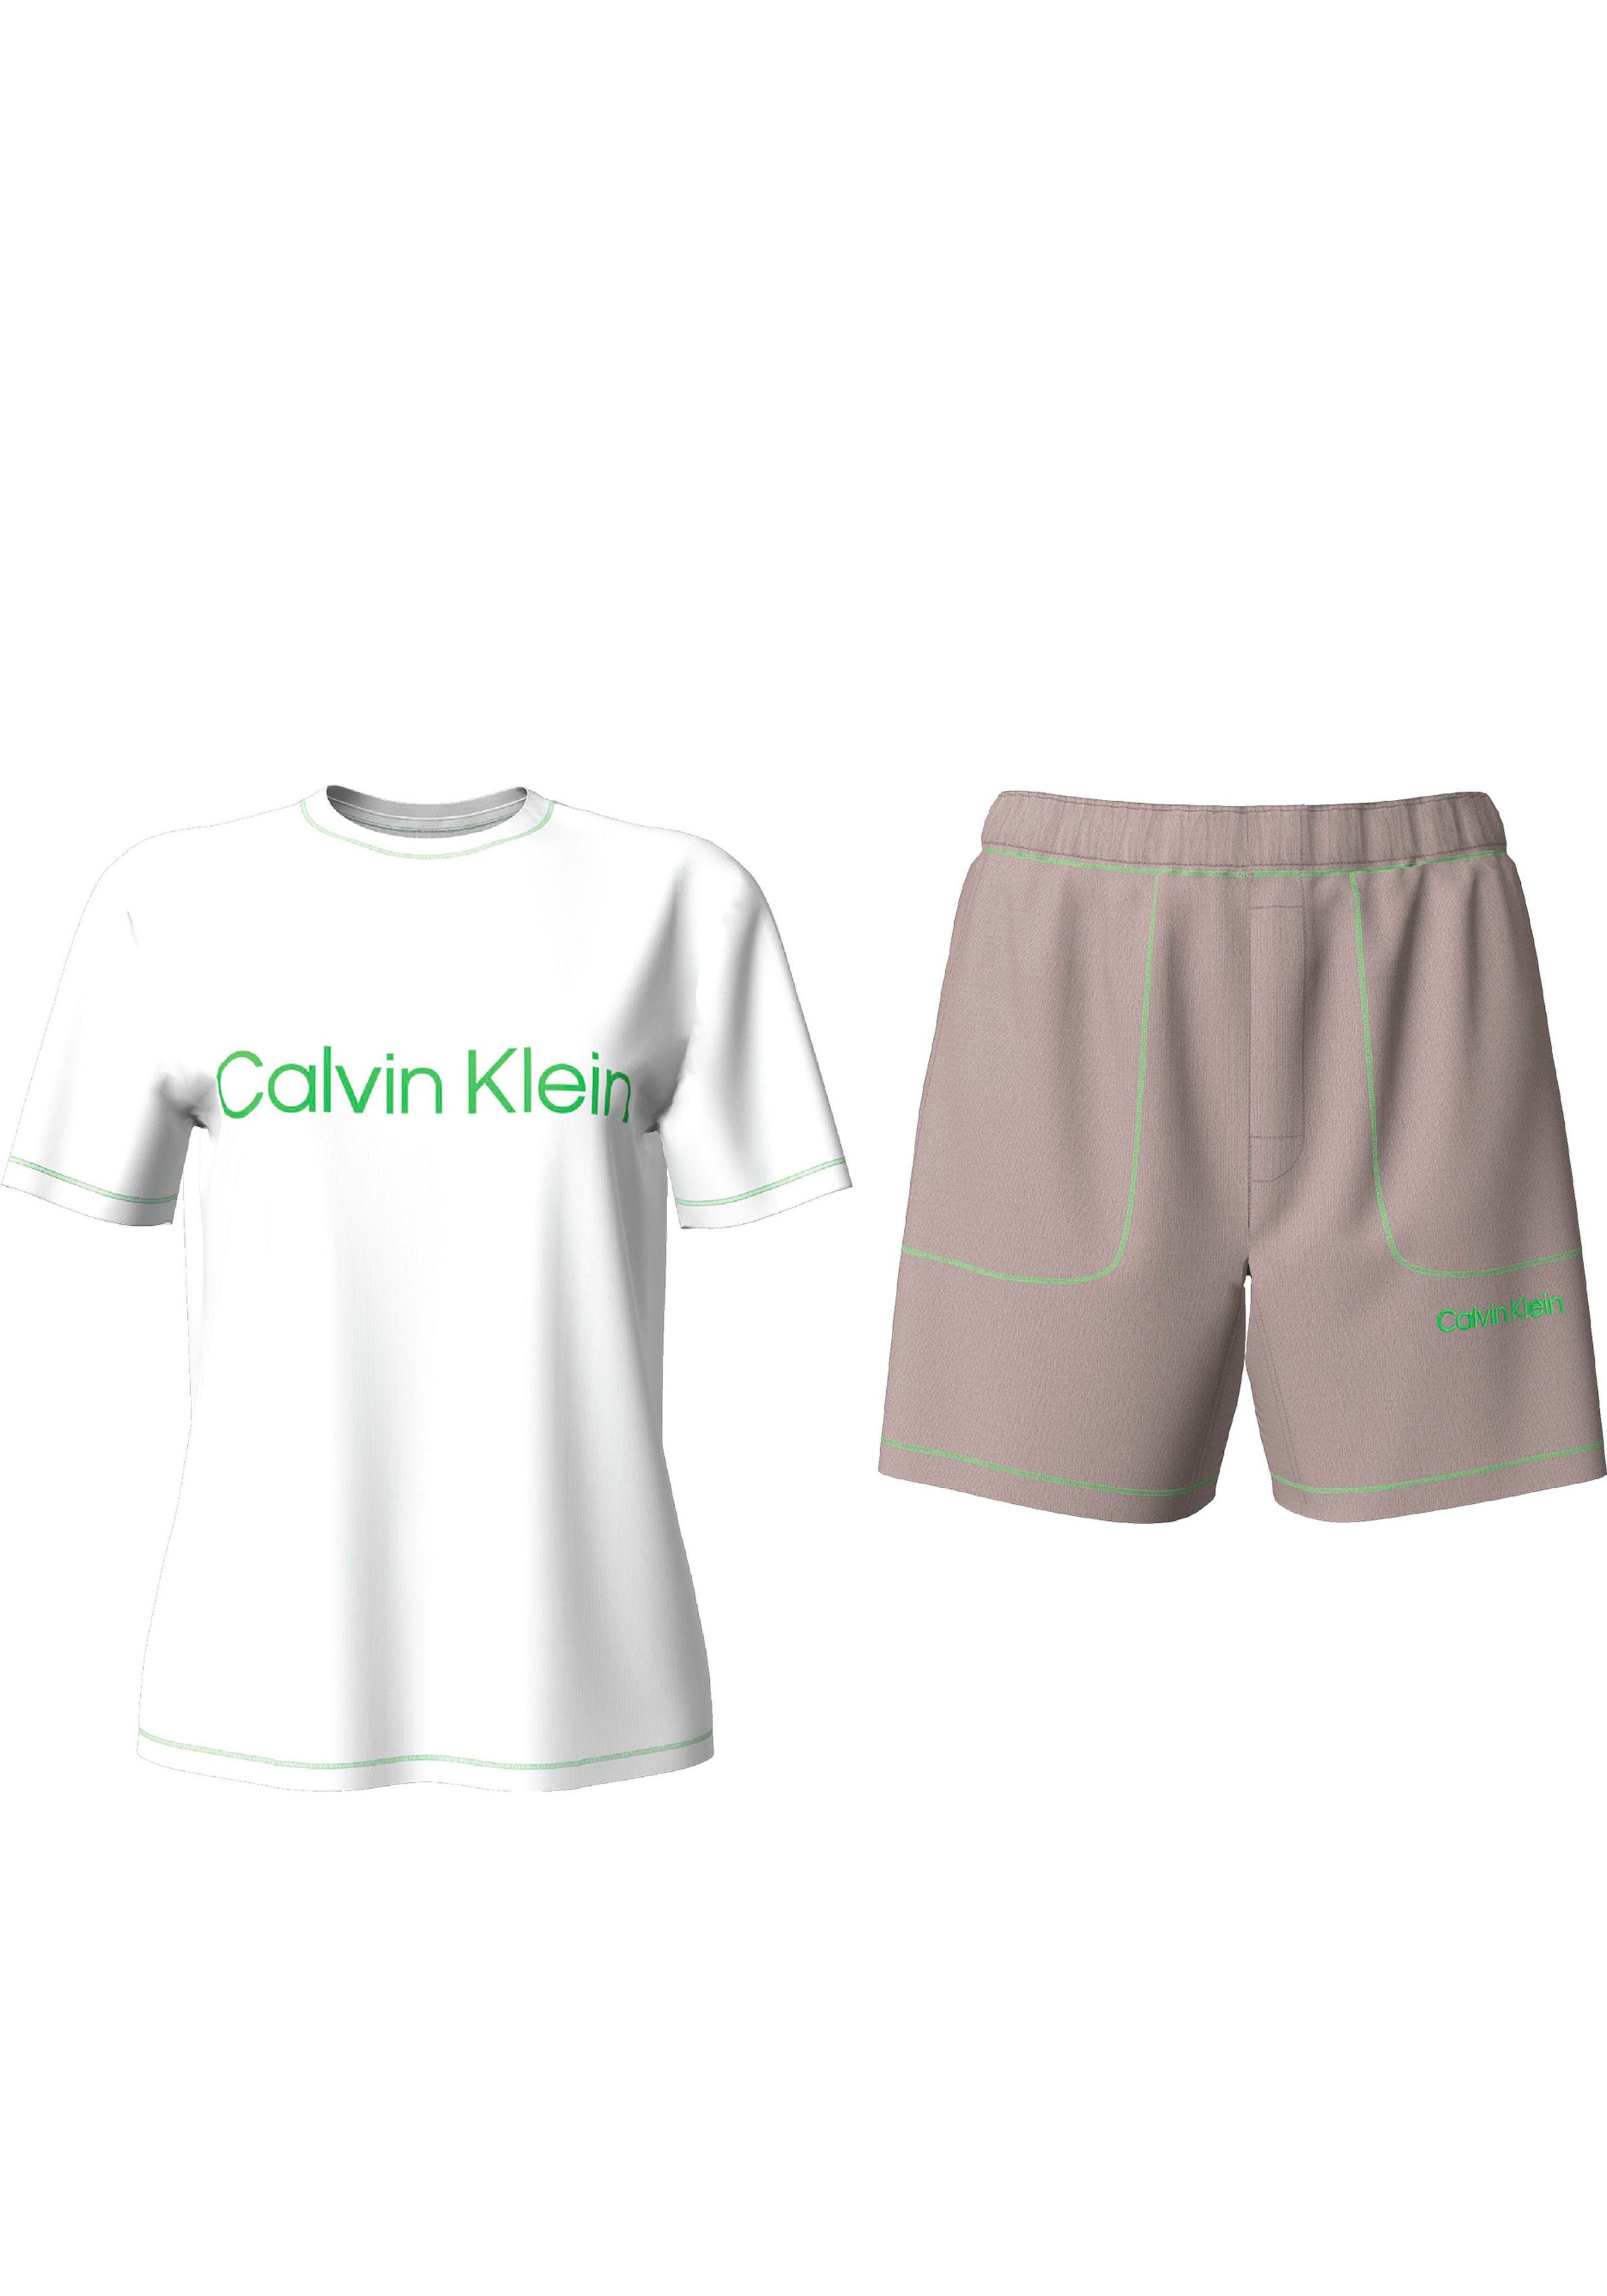 Calvin Klein Underwear Schlafanzug S/S SLEEP SET (2 tlg) mit Markenlabel